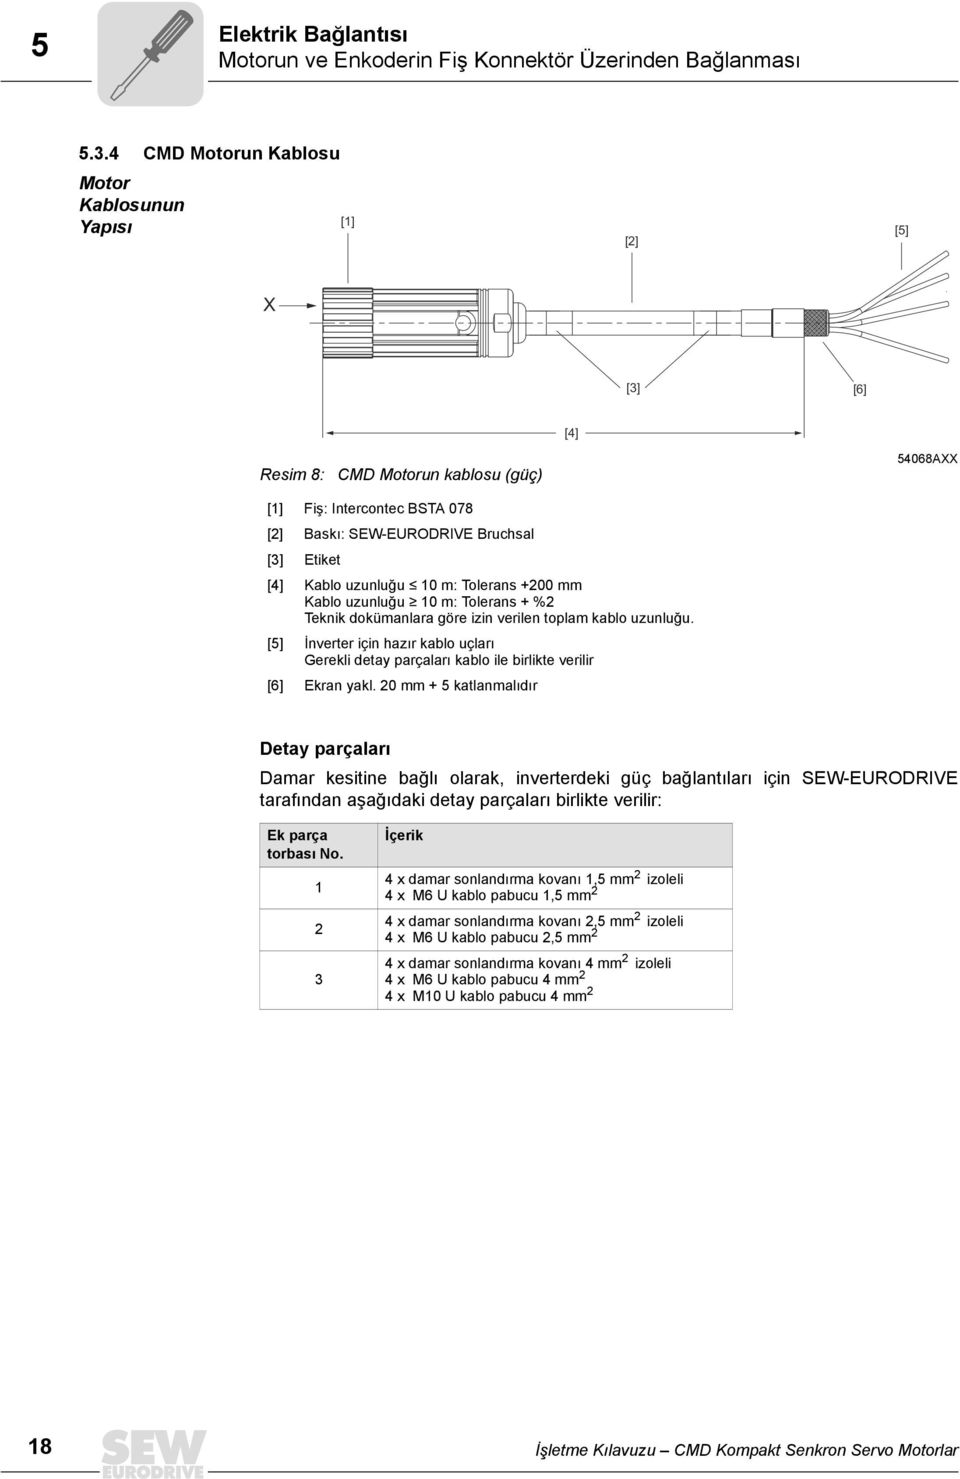 Kablo uzunluğu Â 10 m: Tolerans +200 mm Kablo uzunluğu Ã 10 m: Tolerans + %2 Teknik dokümanlara göre izin verilen toplam kablo uzunluğu.